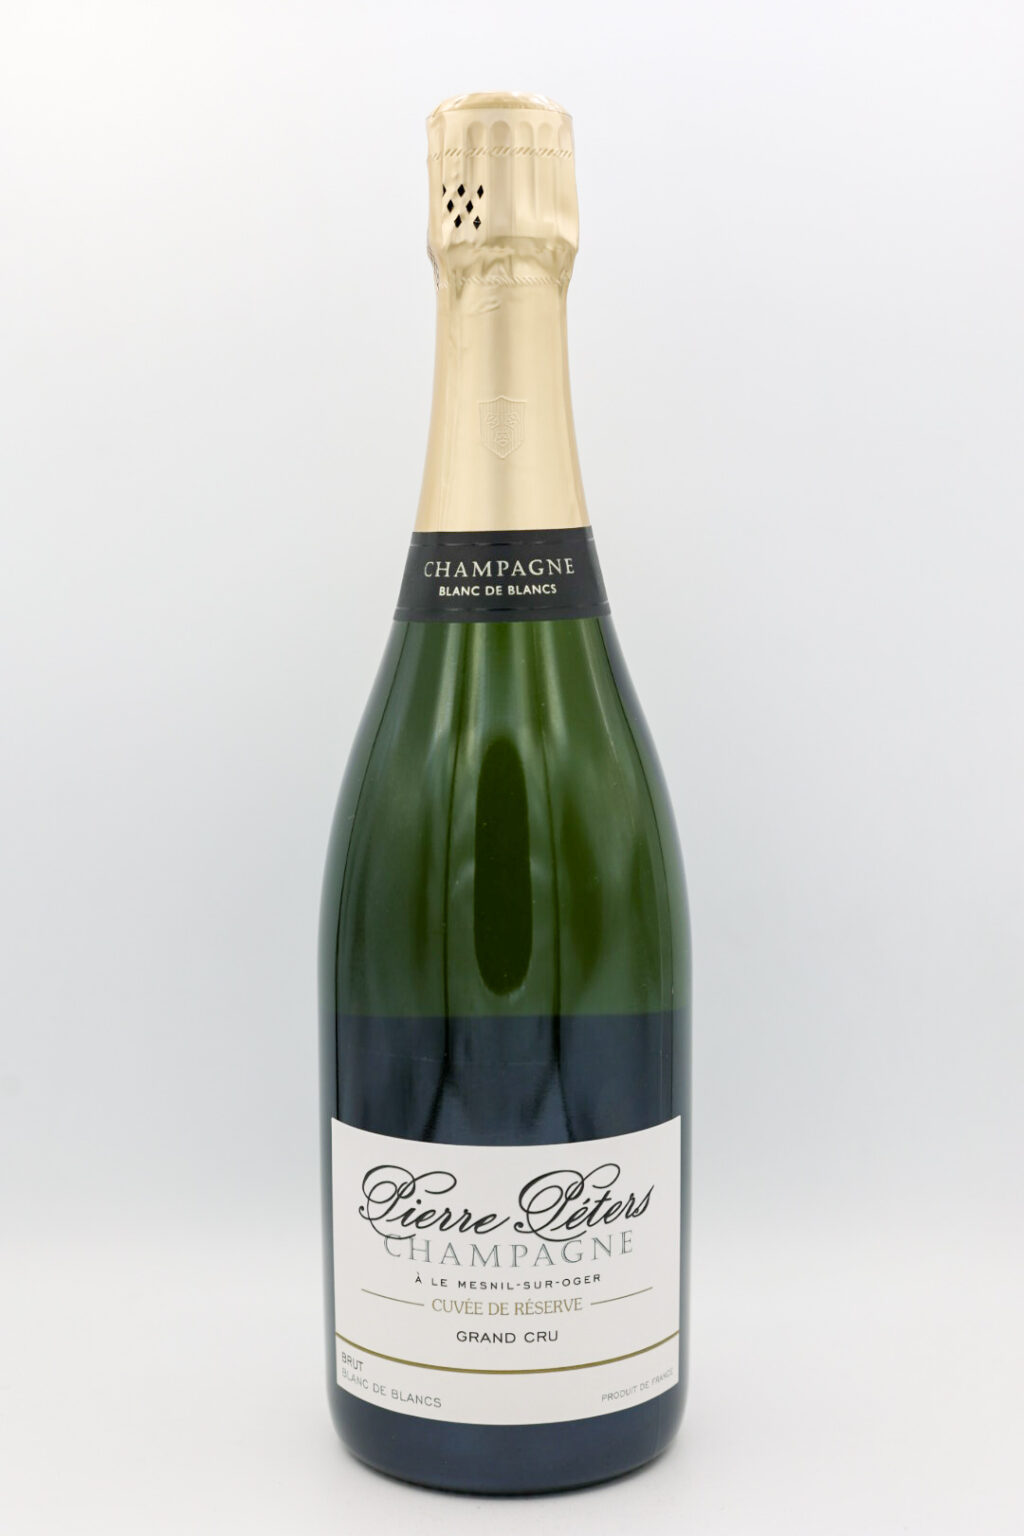 Pierre Peters Champagne Cuvee de Reserve Grand Cru NV